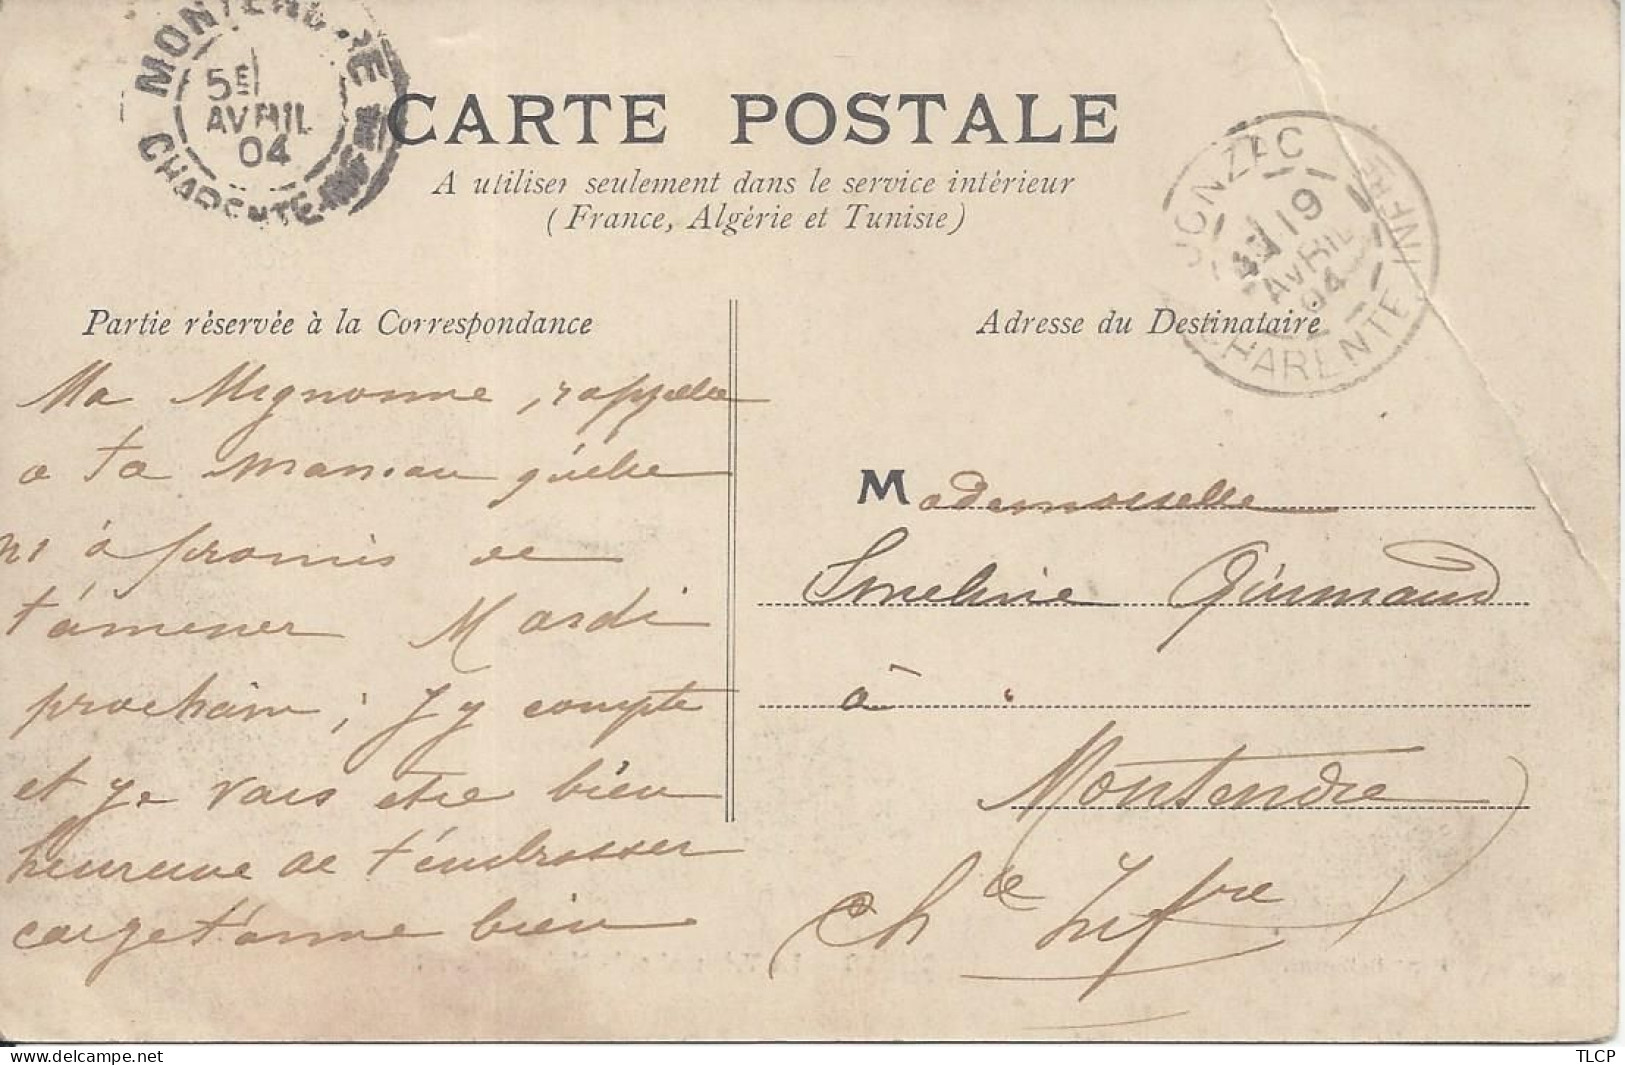 CPA France   CP France  Nouvelle Aquitaine 17 Charente Maritime  Jonzac  Le Tribunal Et La Maison D’arrêt  5 Avril 1904 - Jonzac